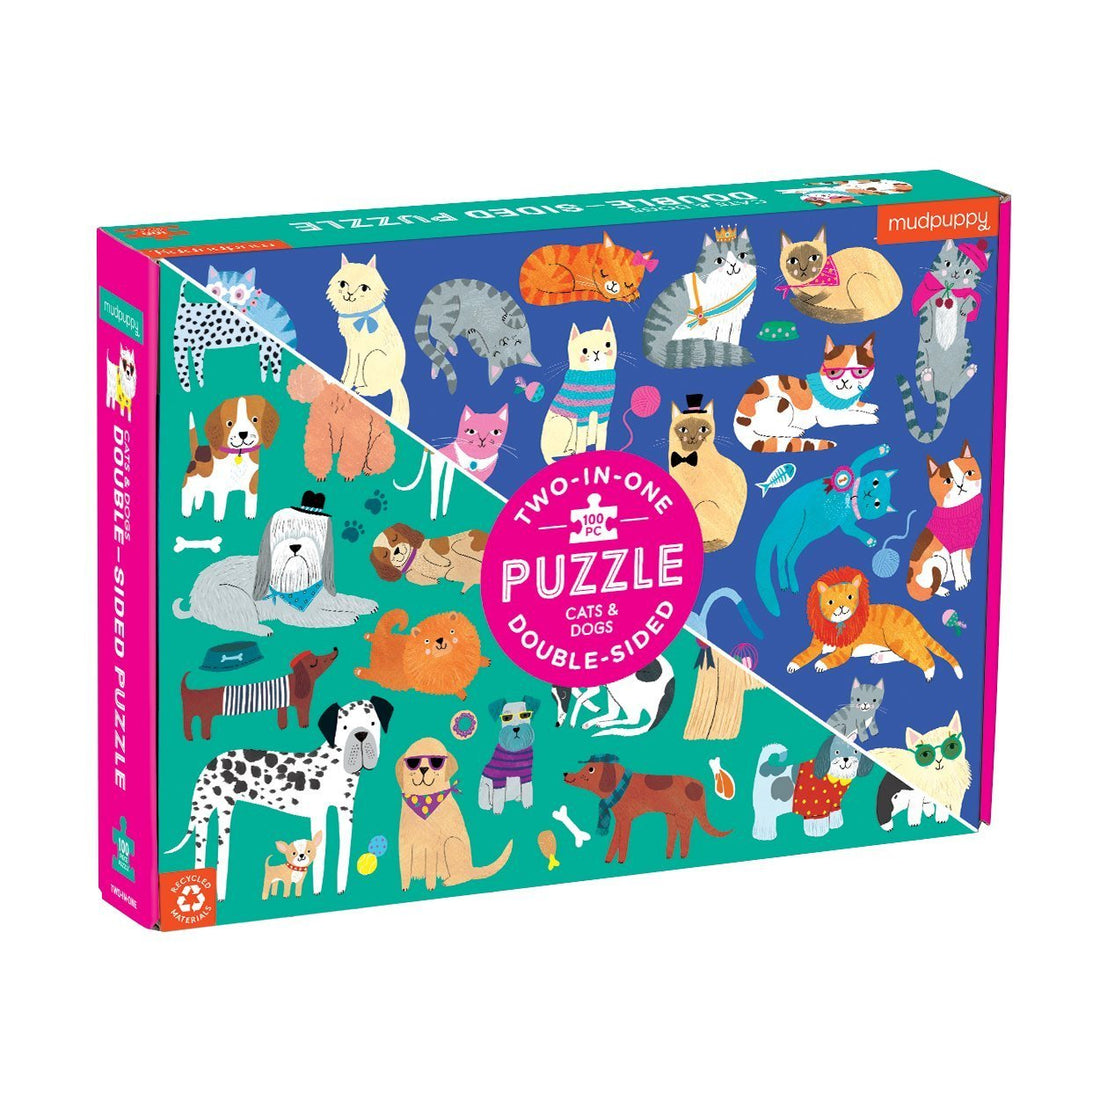 Cats & Dogs 100 Piece Double-Sided Puzzle - Parkette.